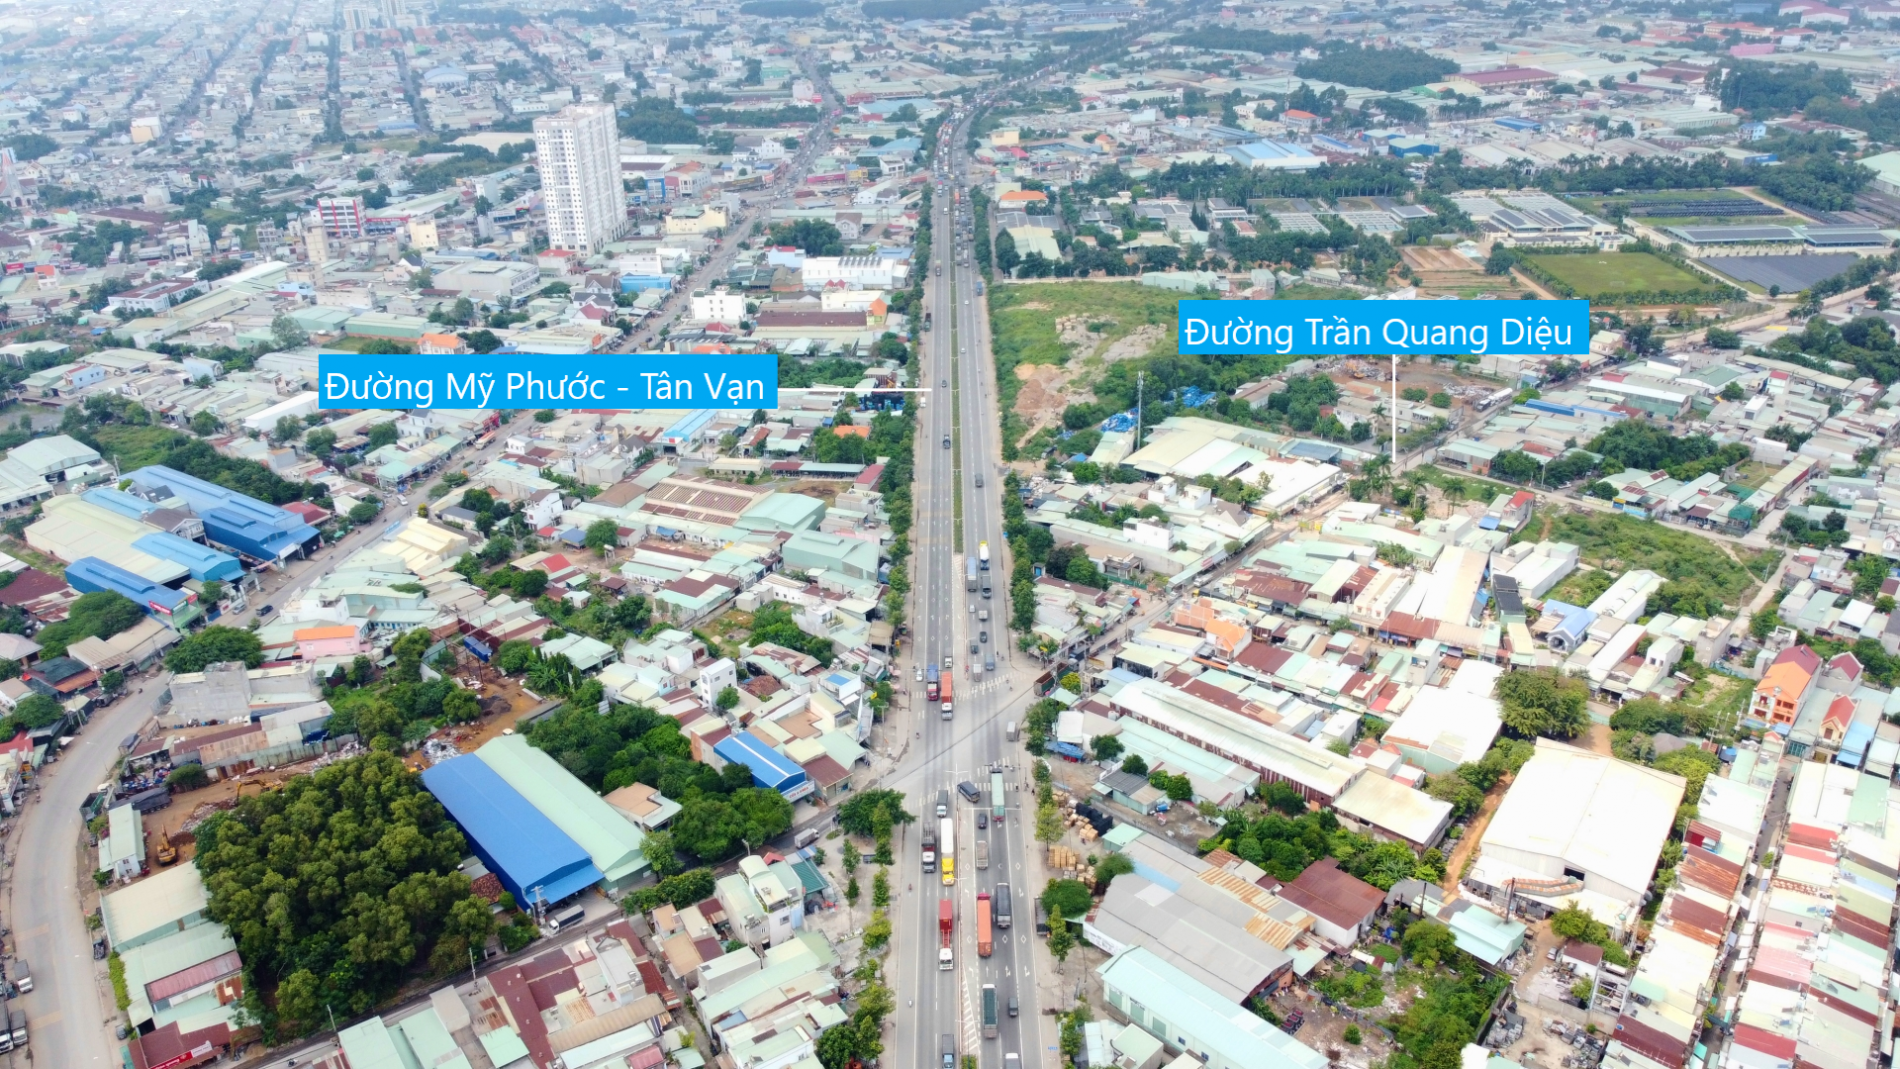 Toàn cảnh đường vành đai 3 qua TP Thuận An, Bình Dương (phần 1)